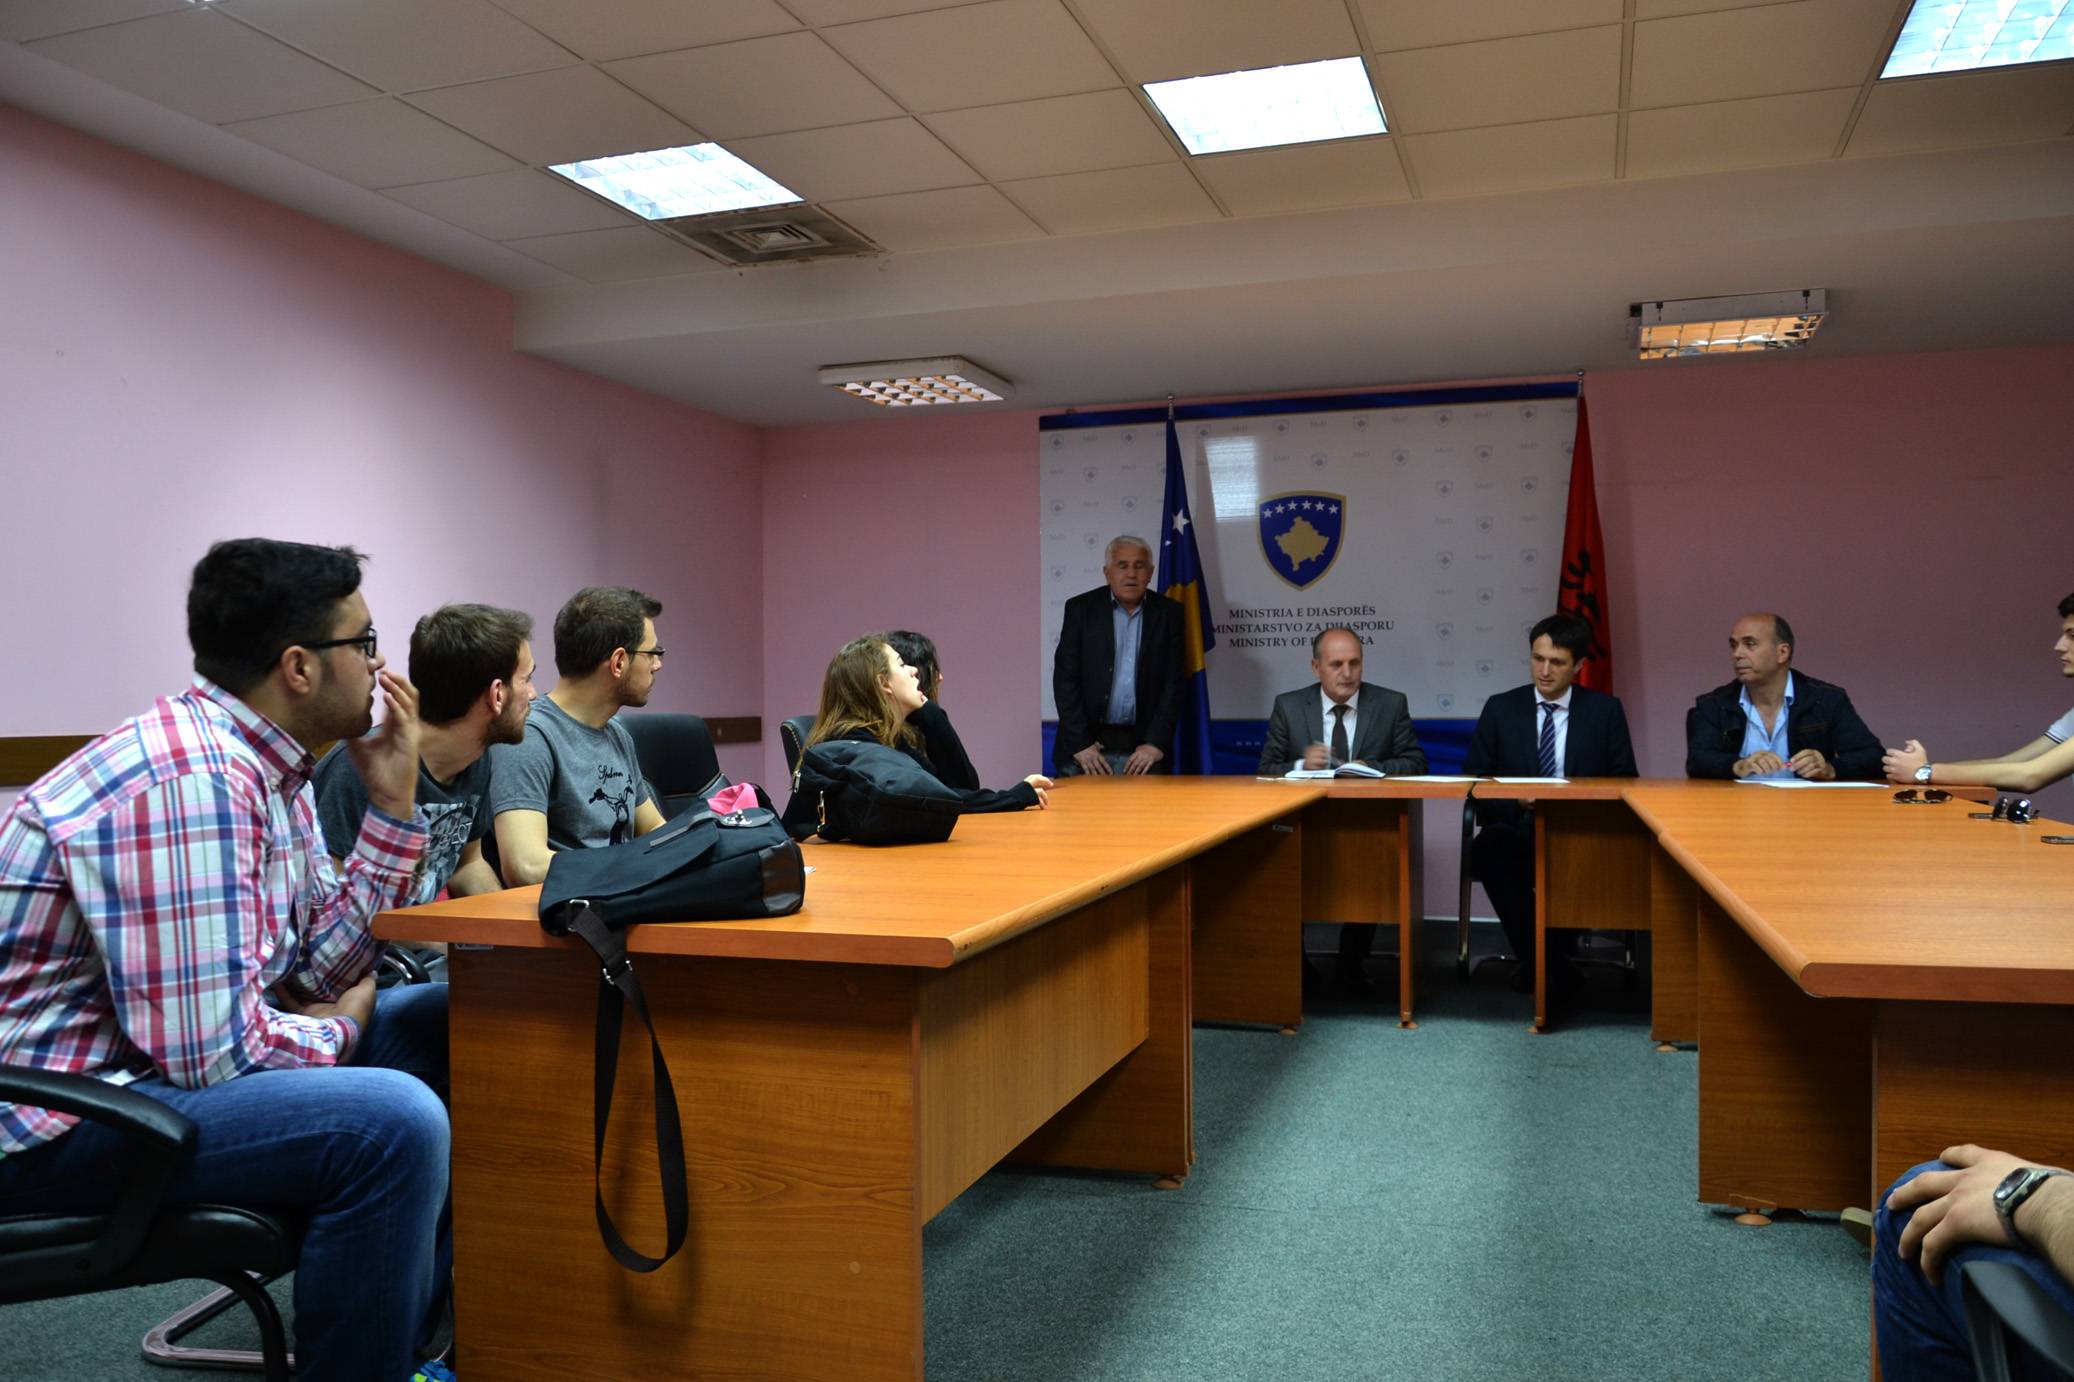 Studentë të kursit të gjuhës shqipe në Turqi vizitojnë Kosovën